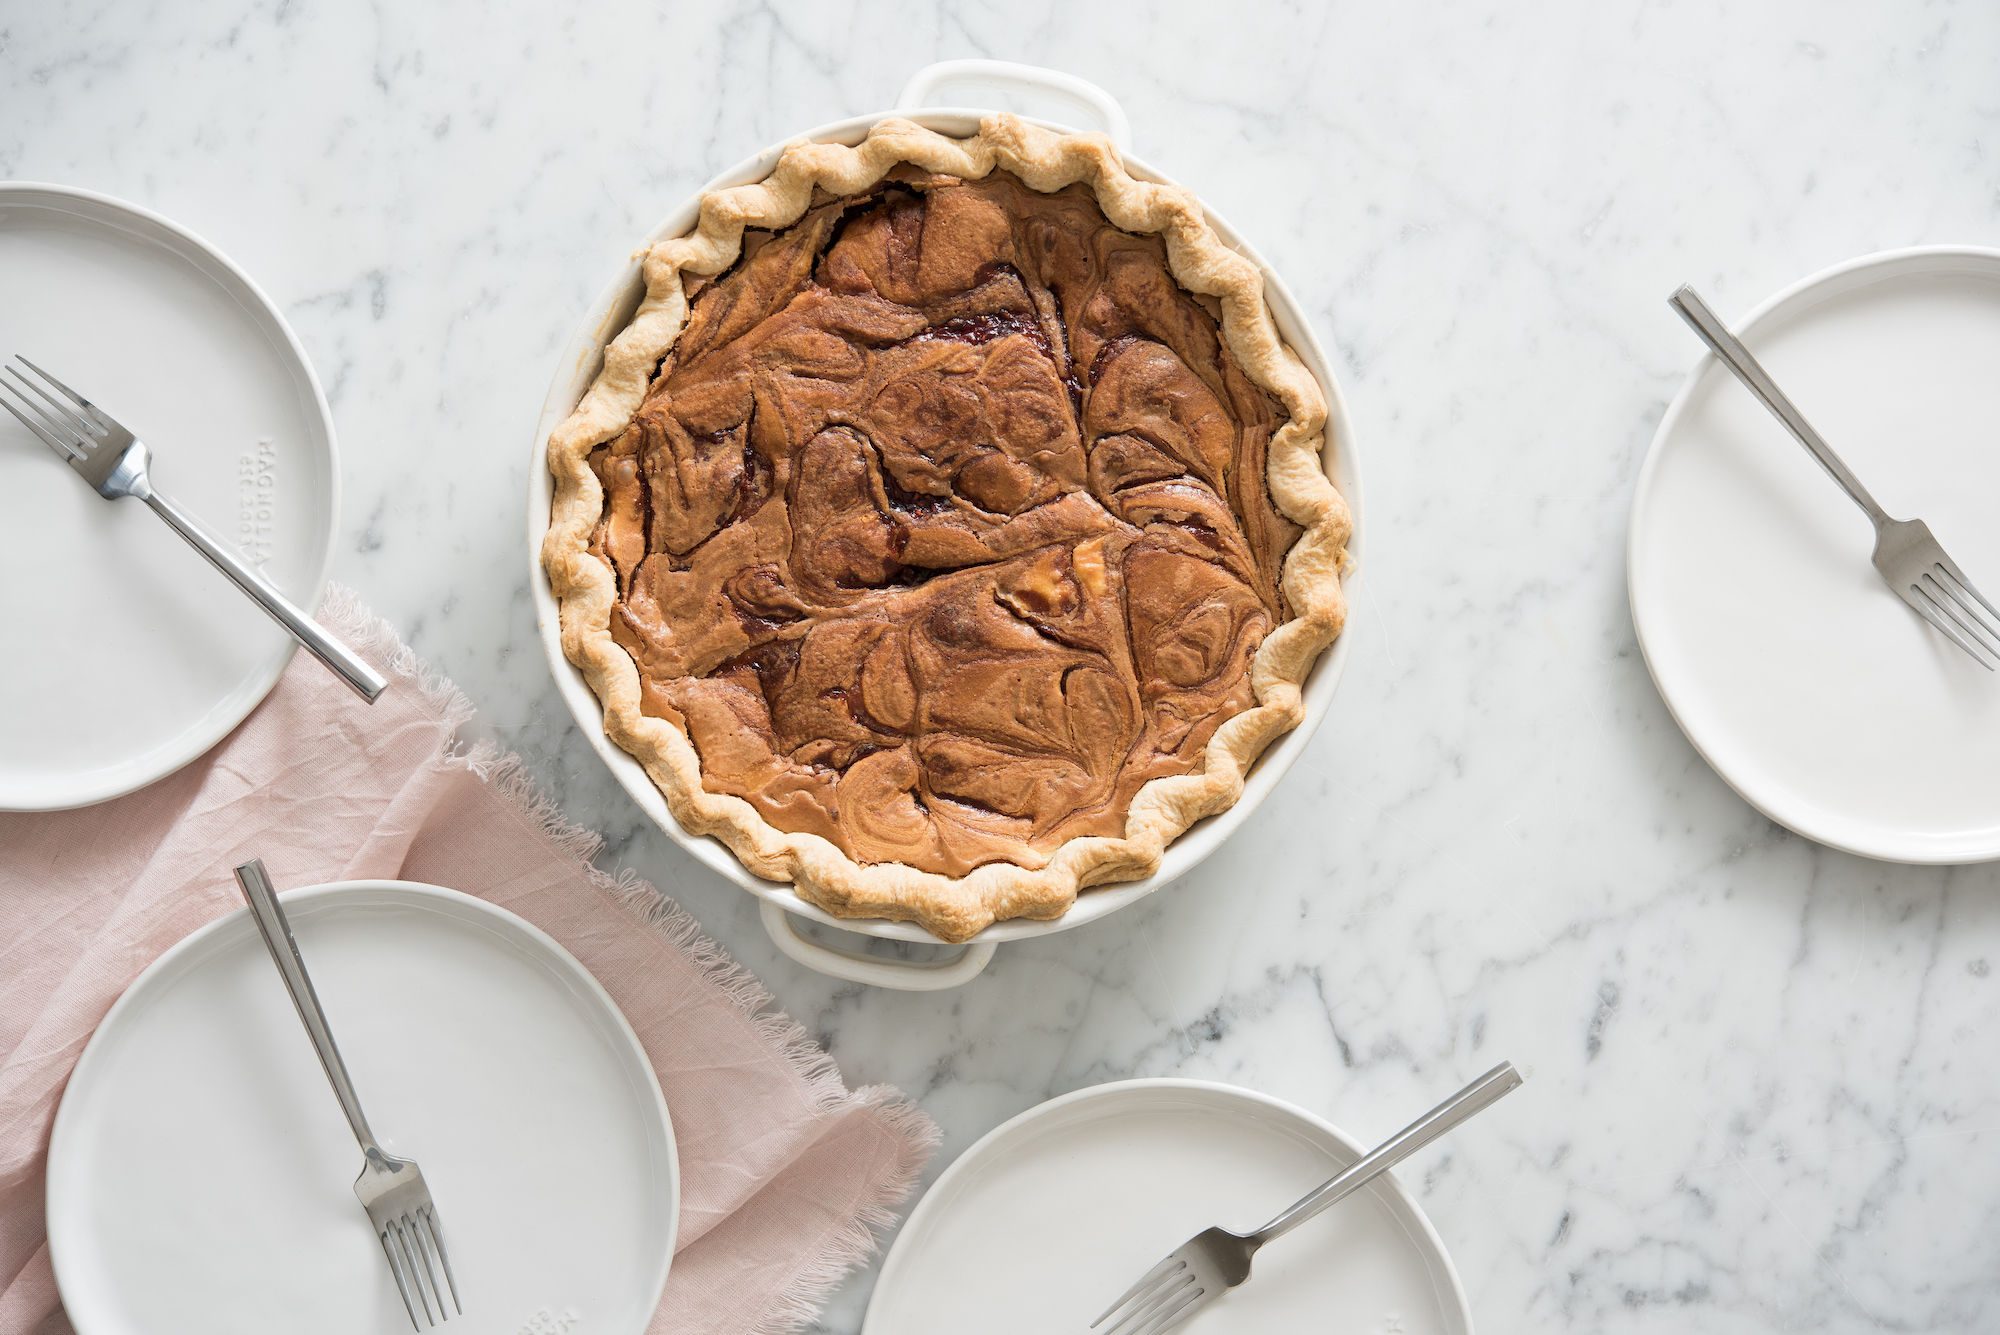 Brambleberry Pie Recipe – Sunset Magazine